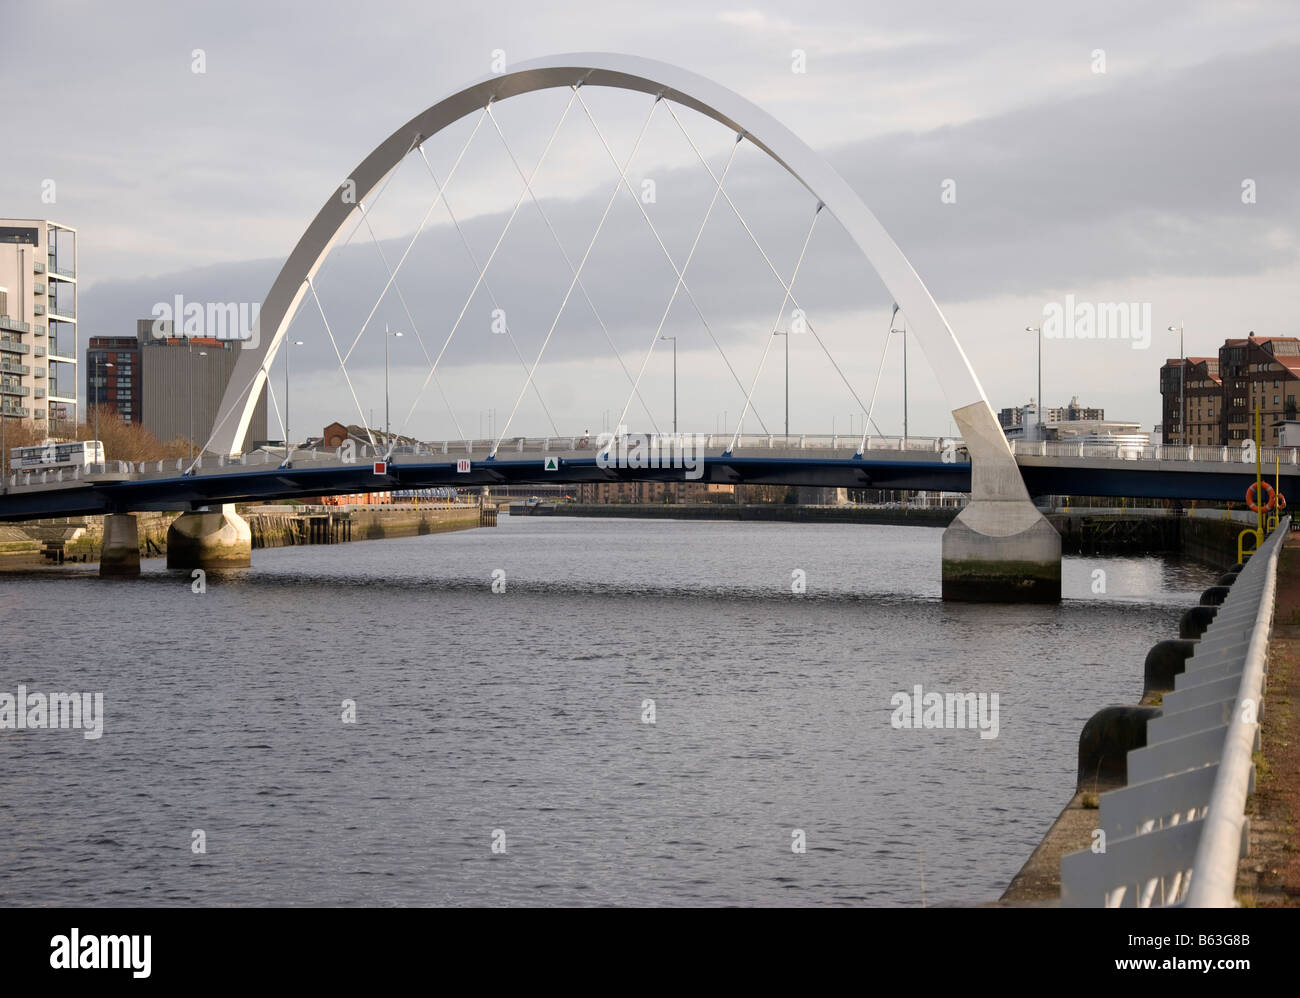 Le pont aux Rivière Clyde Glasgow Finnieston Ecosse Royaume-Uni Royaume-Uni Banque D'Images